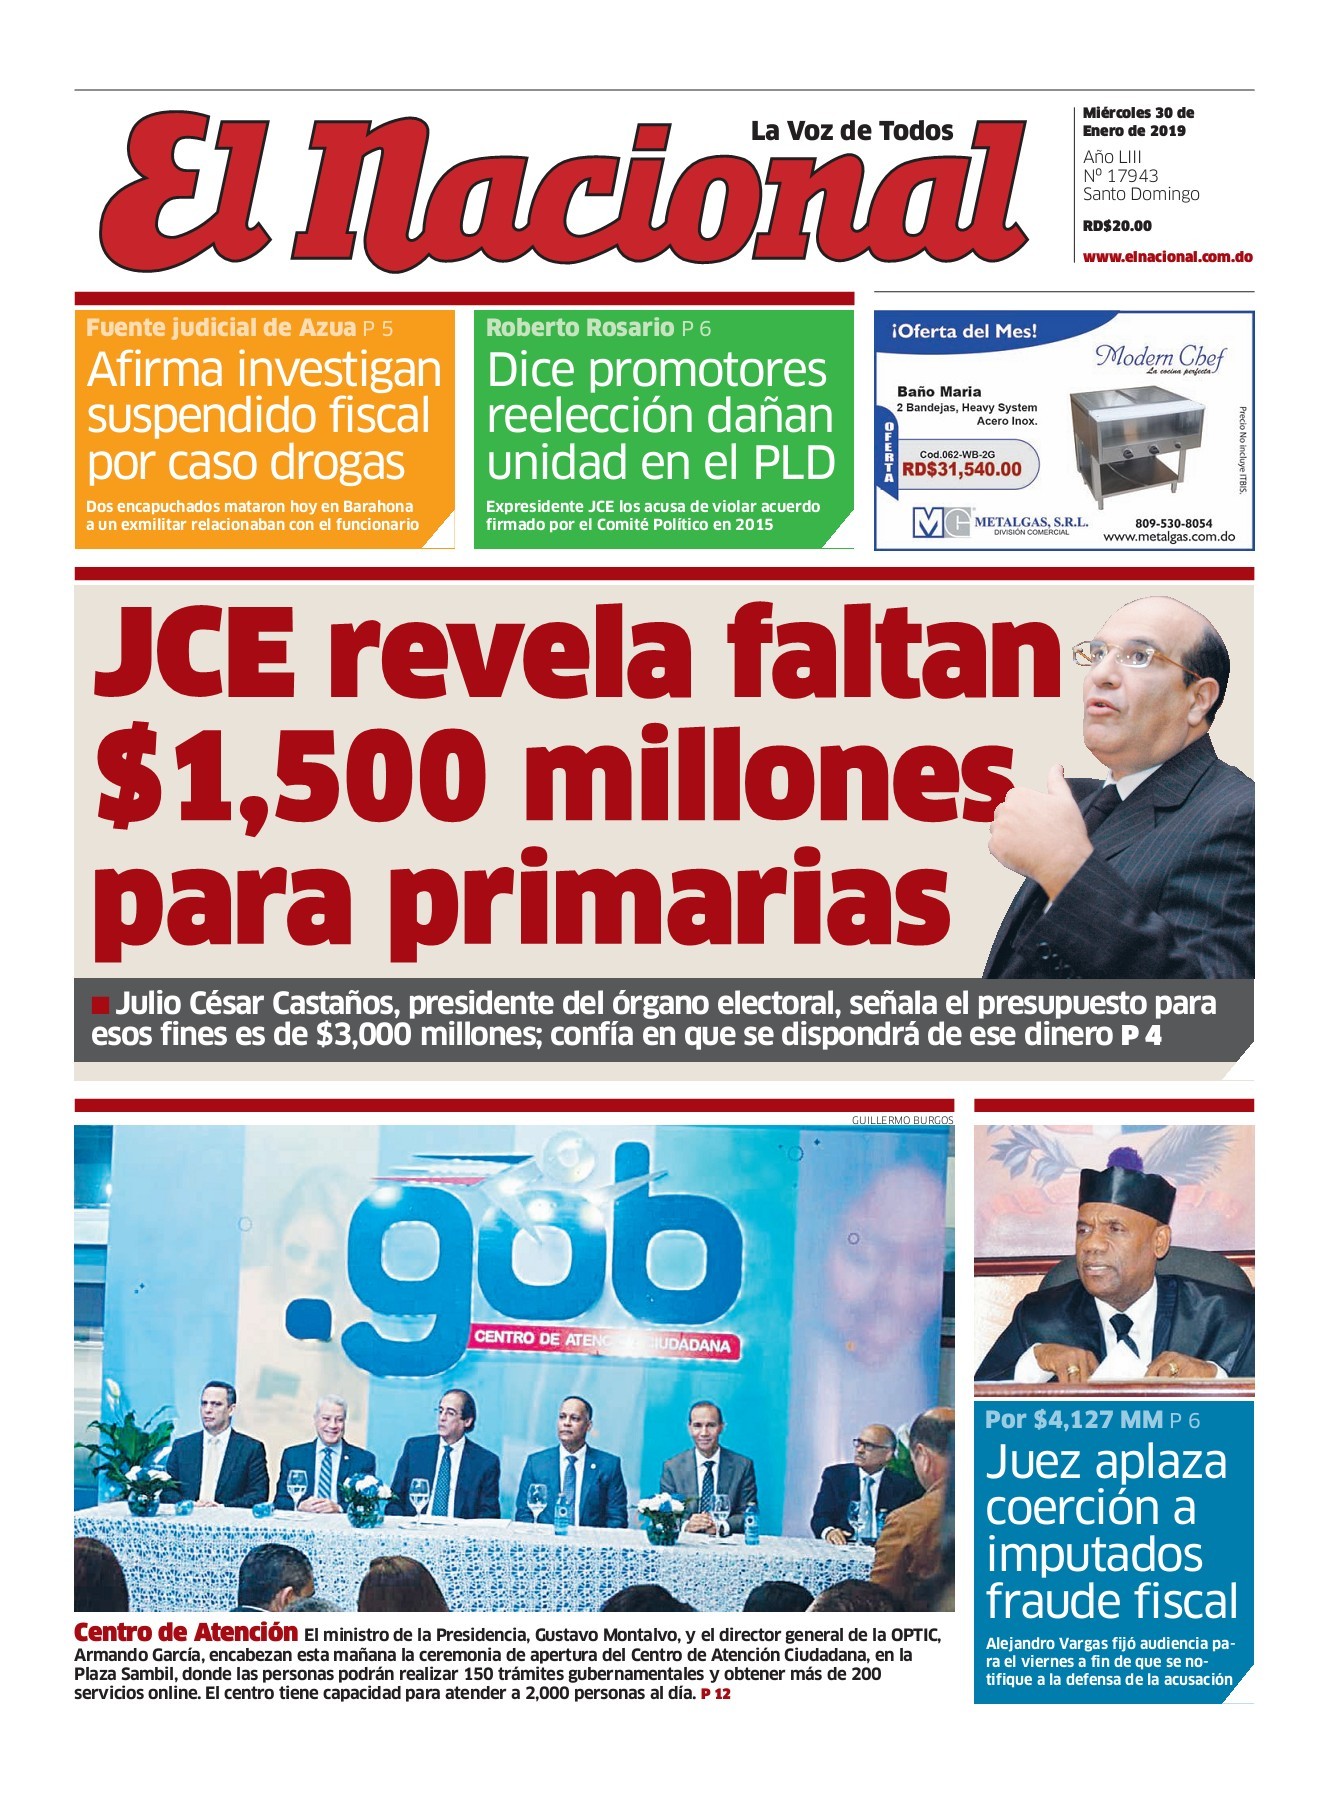 Portada Periódico El Nacional, Miércoles 30 de Enero 2019